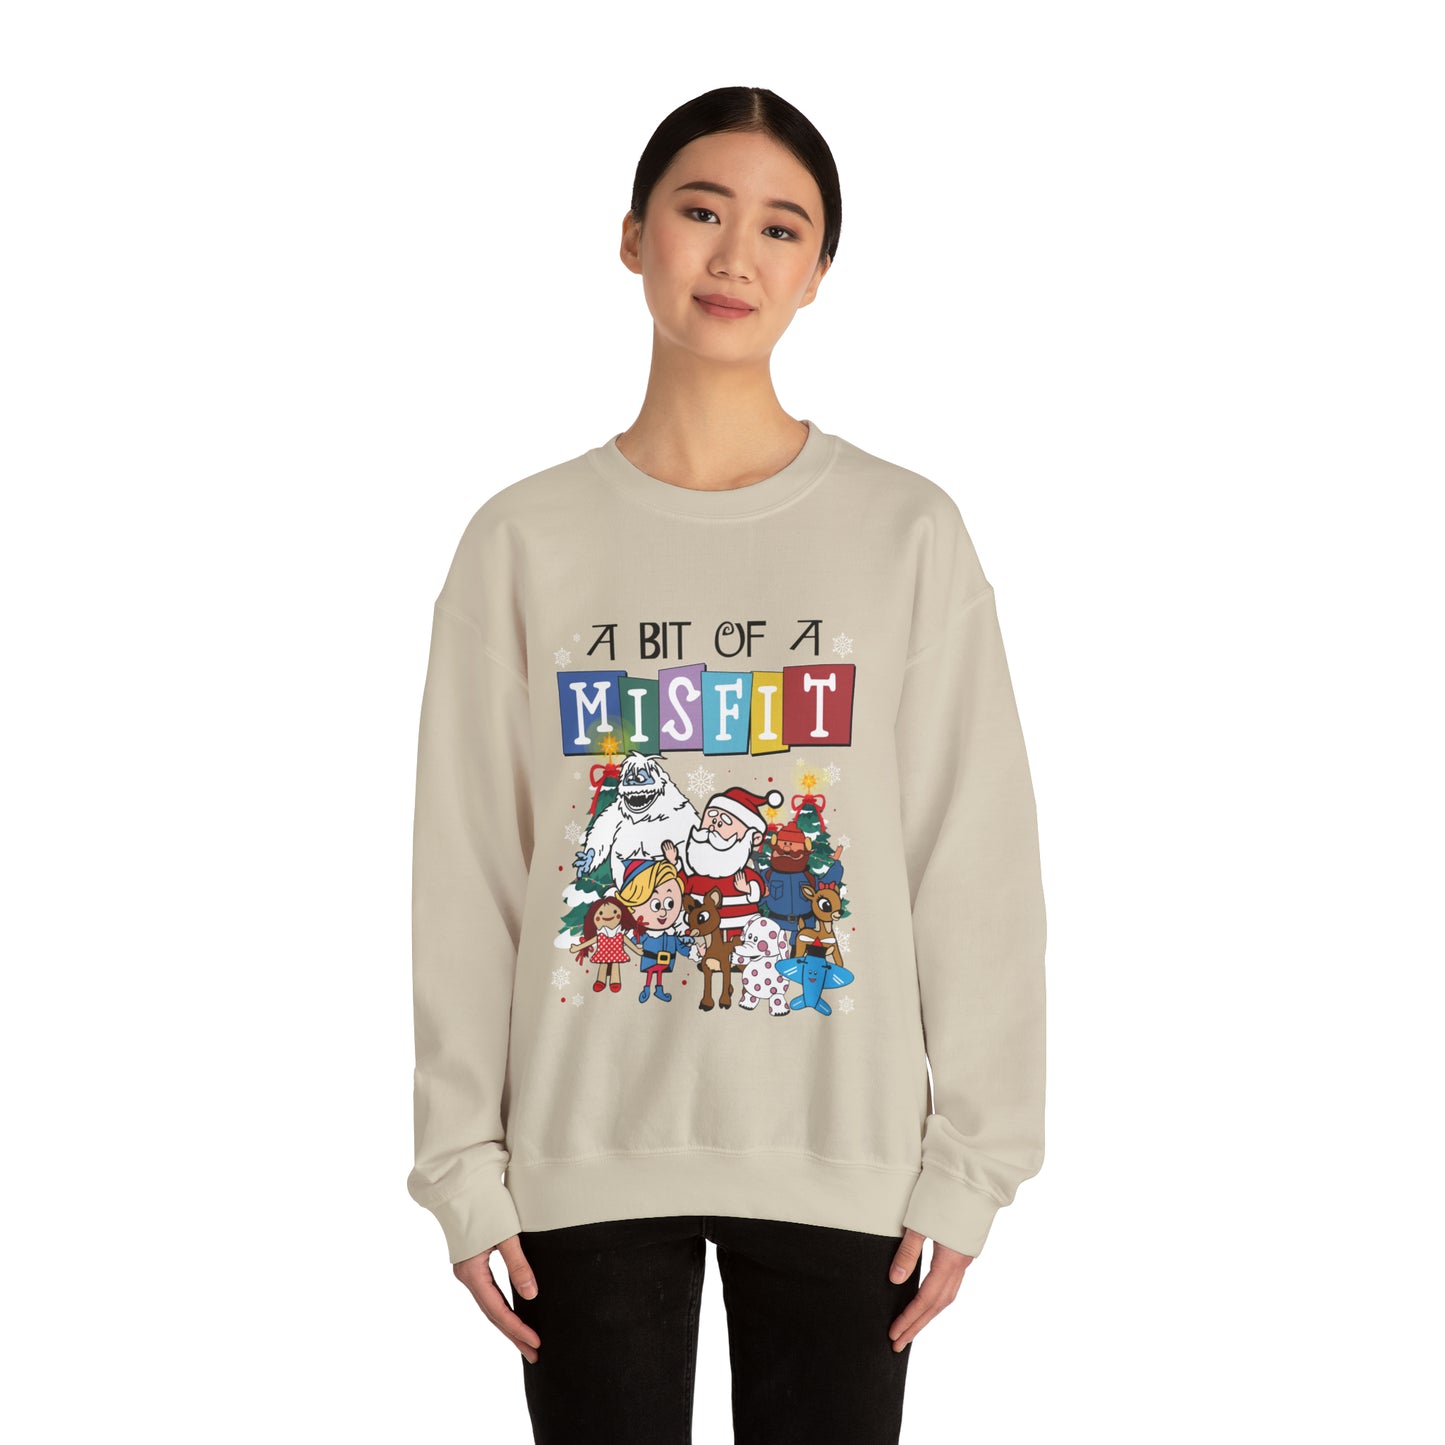 Misfit Toys Christmas Sweatshirt, Misfit Sweatshirt, Christmas Sweatshirt Gifts, Unisex Heavy Blend™ Crewneck Sweatshirt